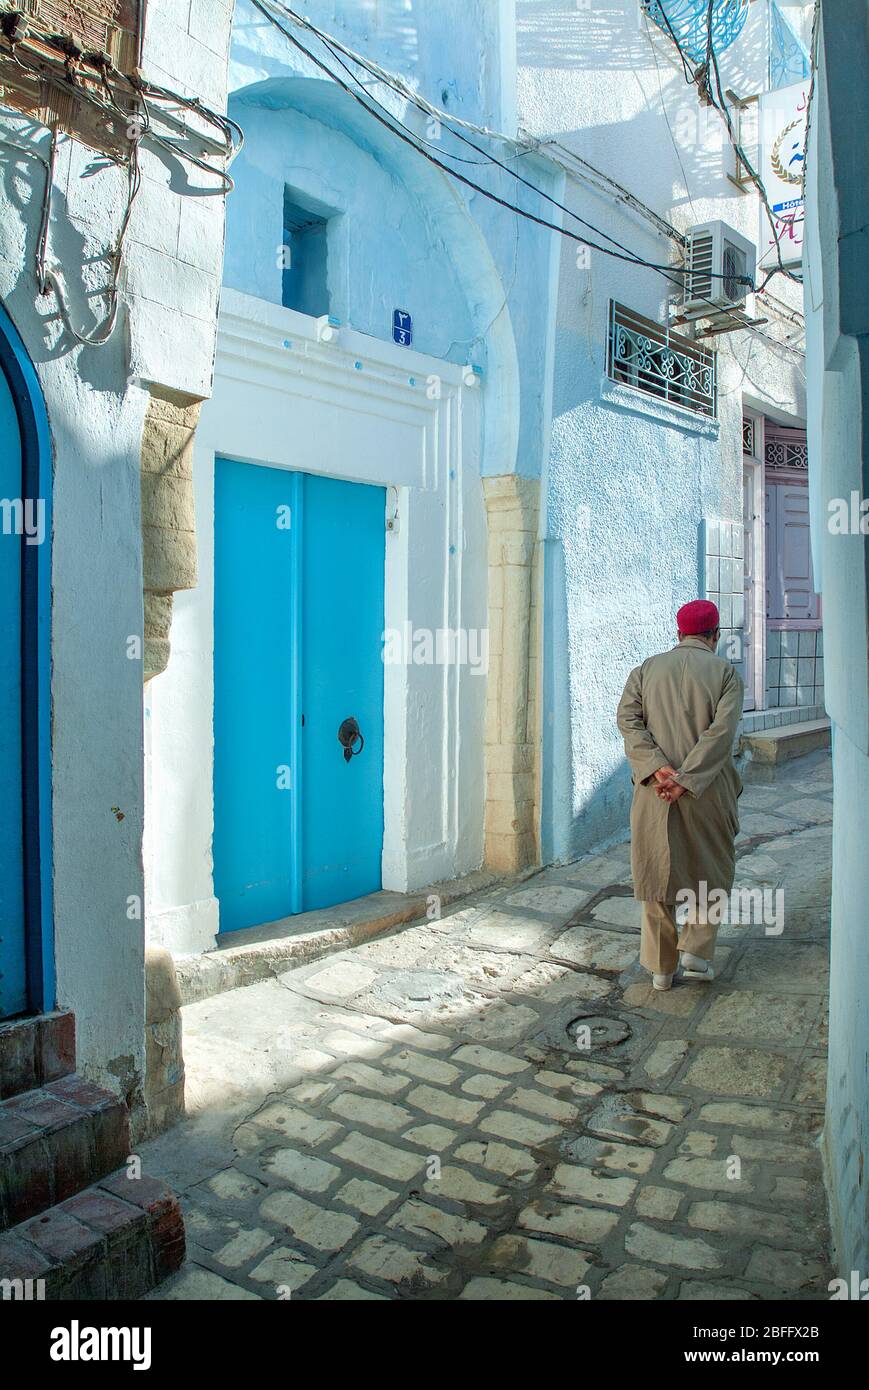 Hombre local con vestido tradicional caminando por calles estrechas, Medina, Sousse, Túnez Foto de stock